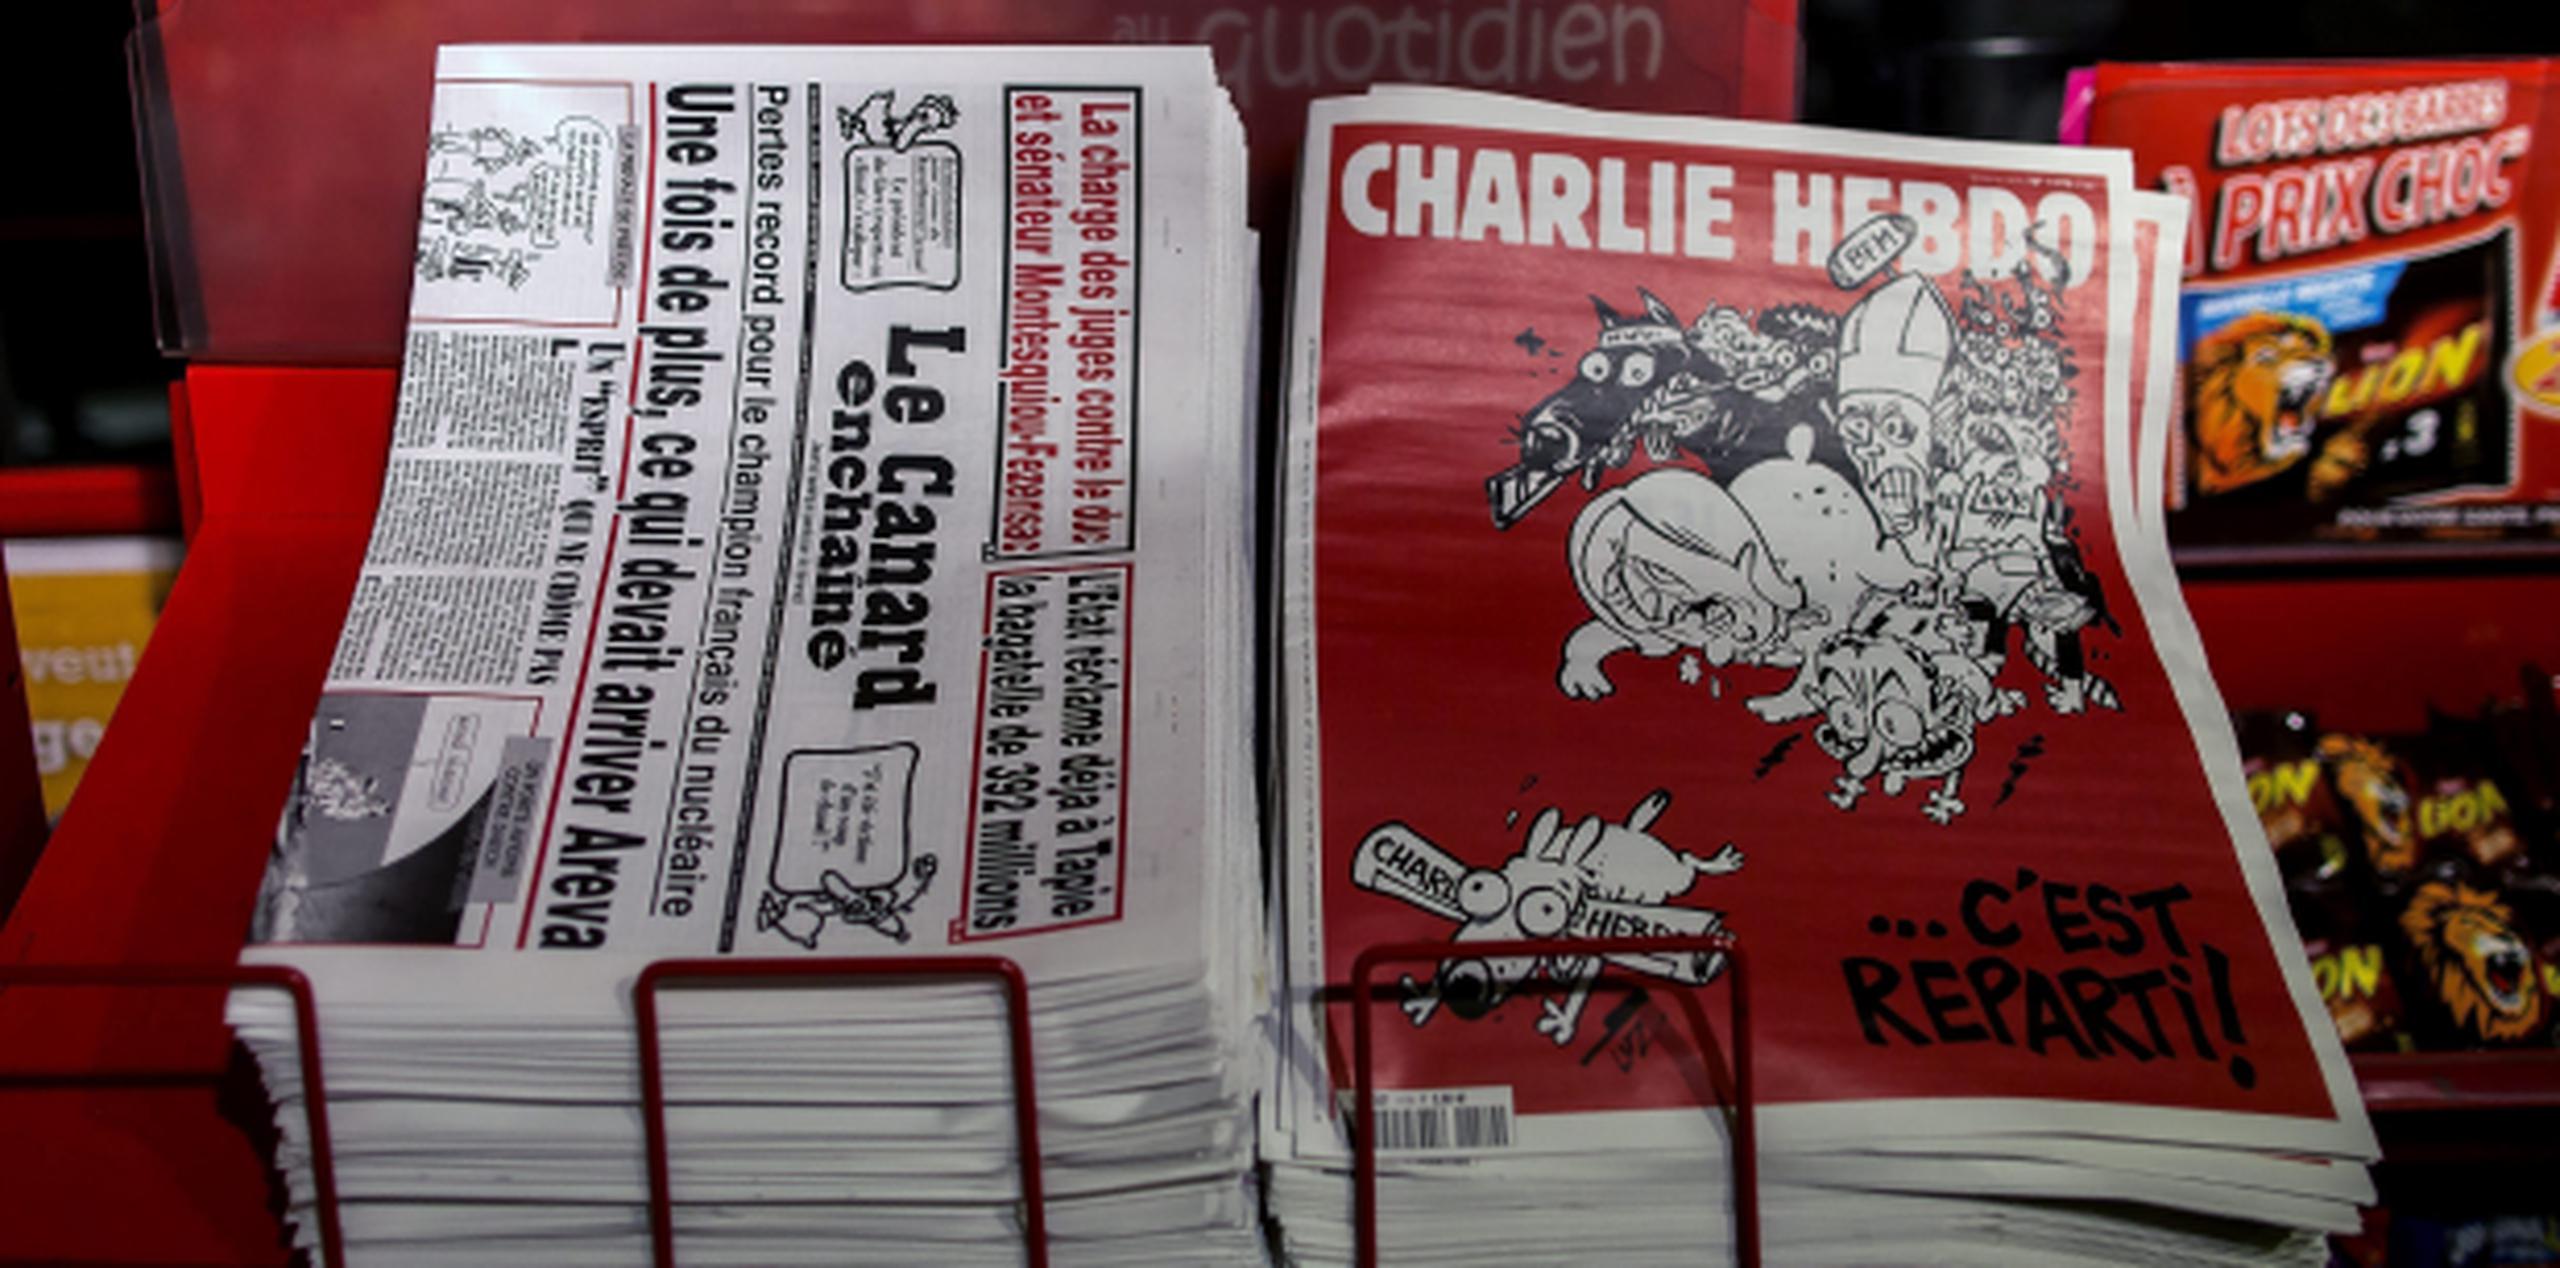 El semanario satírico "Charlie Hebdo" vuelve hoy a los quioscos, después de publicar un número especial tras la masacre yihadista de enero, con una tirada de dos millones y medio de ejemplares y nuevas burlas contra sus blancos favoritos. (EFE)